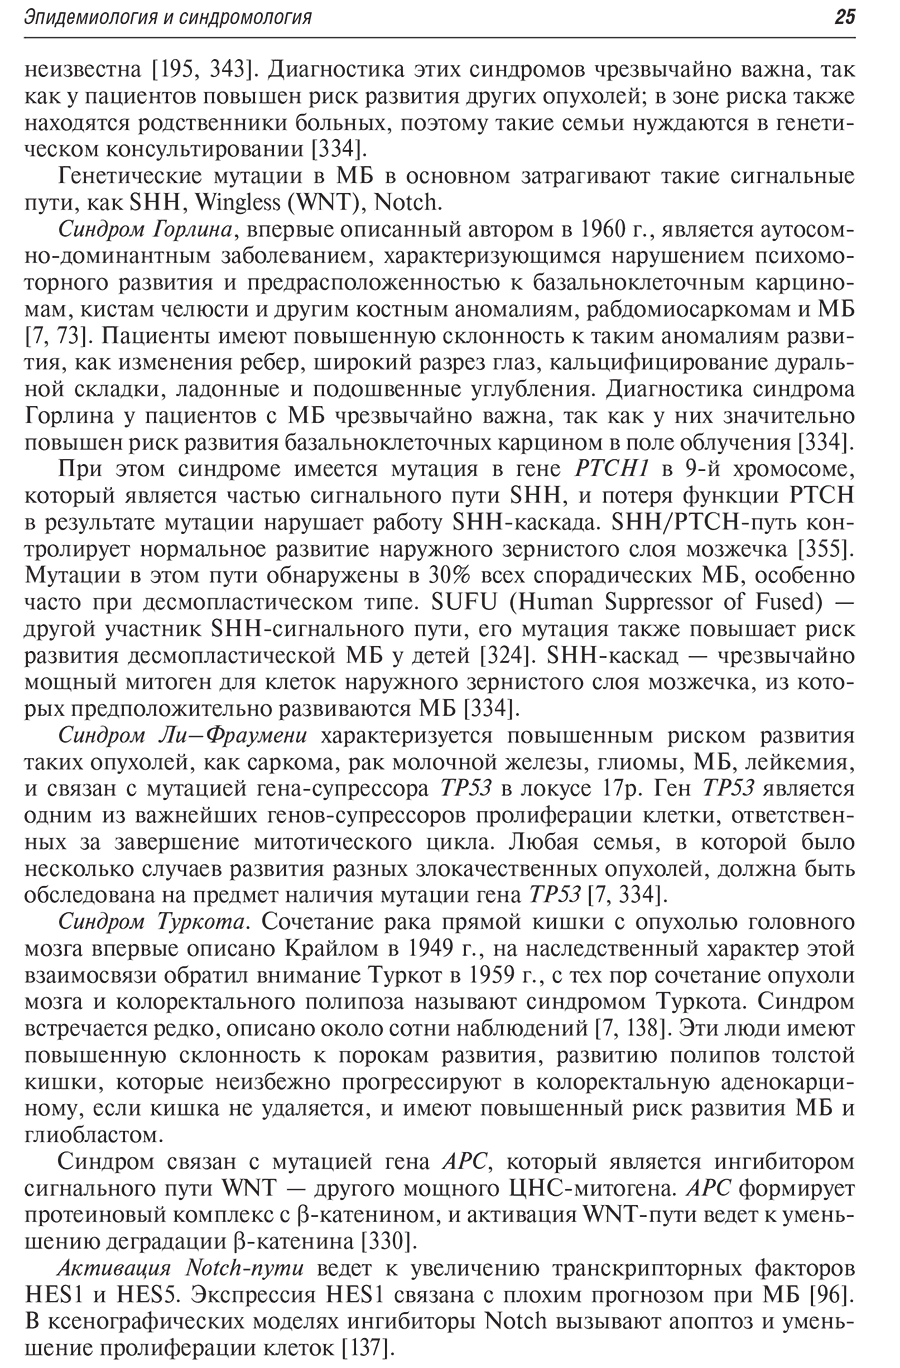 Пример страницы из книги "Медуллобластомы у детей" - Горелышев С. К., Медведева О. А.